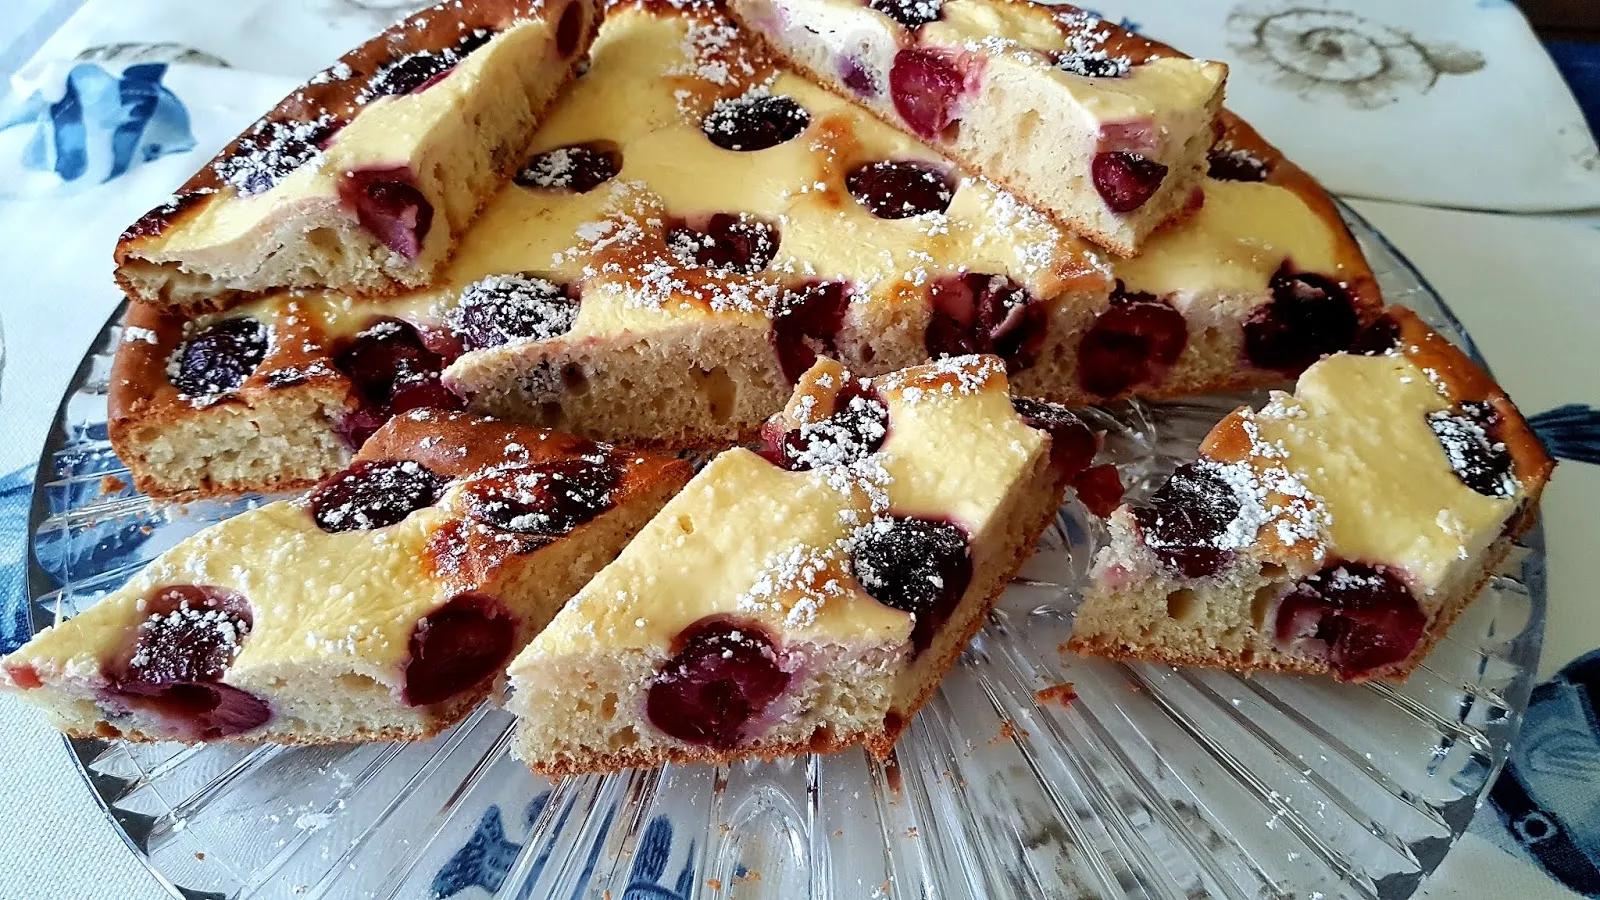 Heidis-Sattmacher-kreativ und einfach: Ungarischer Quark-Kirsch-Kuchen